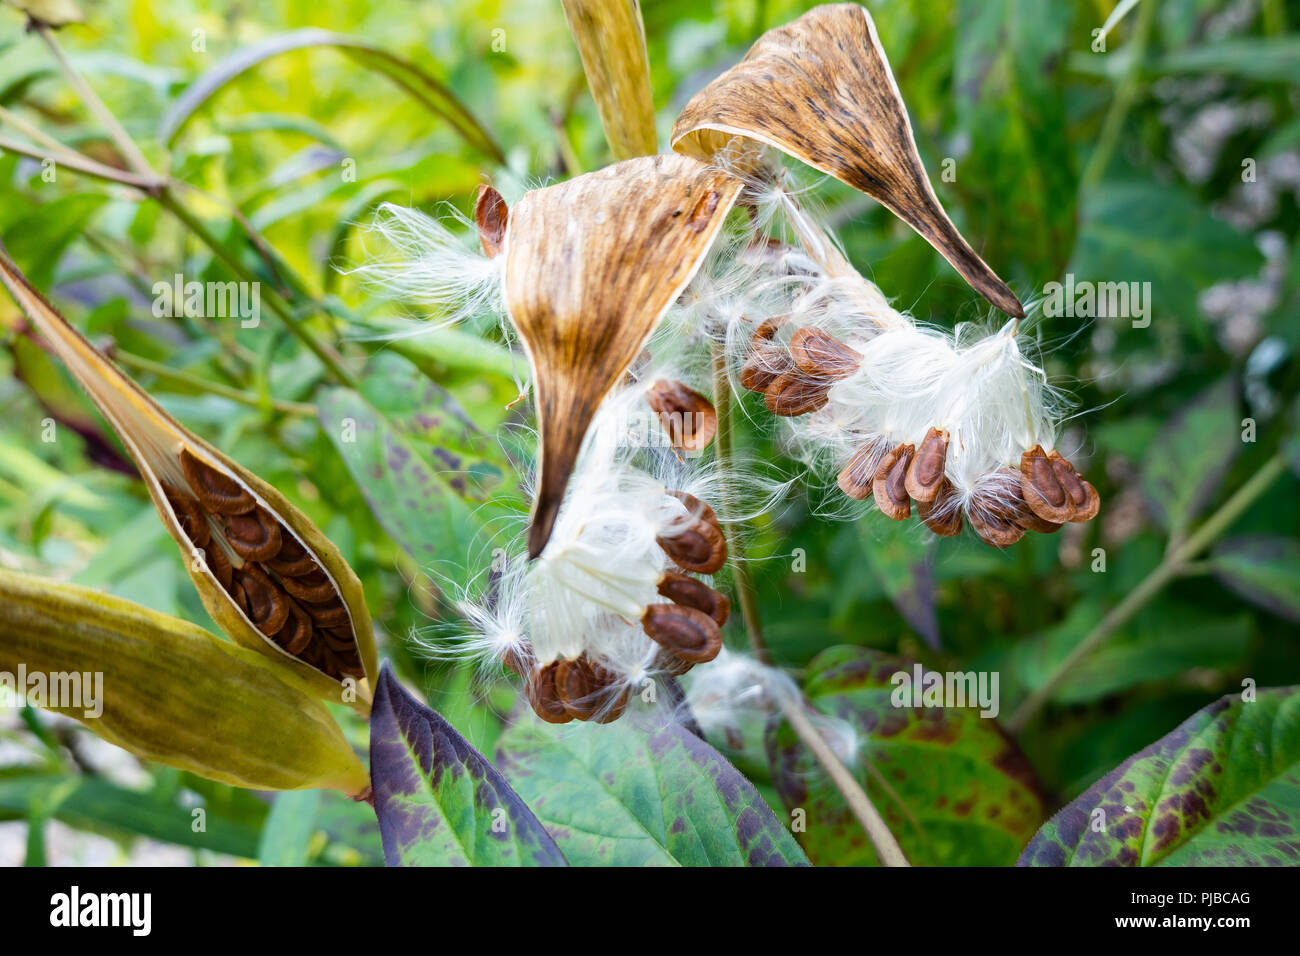 Apertura di cialde di seme su una palude milkweed plant, Asclepias incarnata, in un giardino in speculatore, NY USA con la dispersione di semi per formare nuove piante. Foto Stock